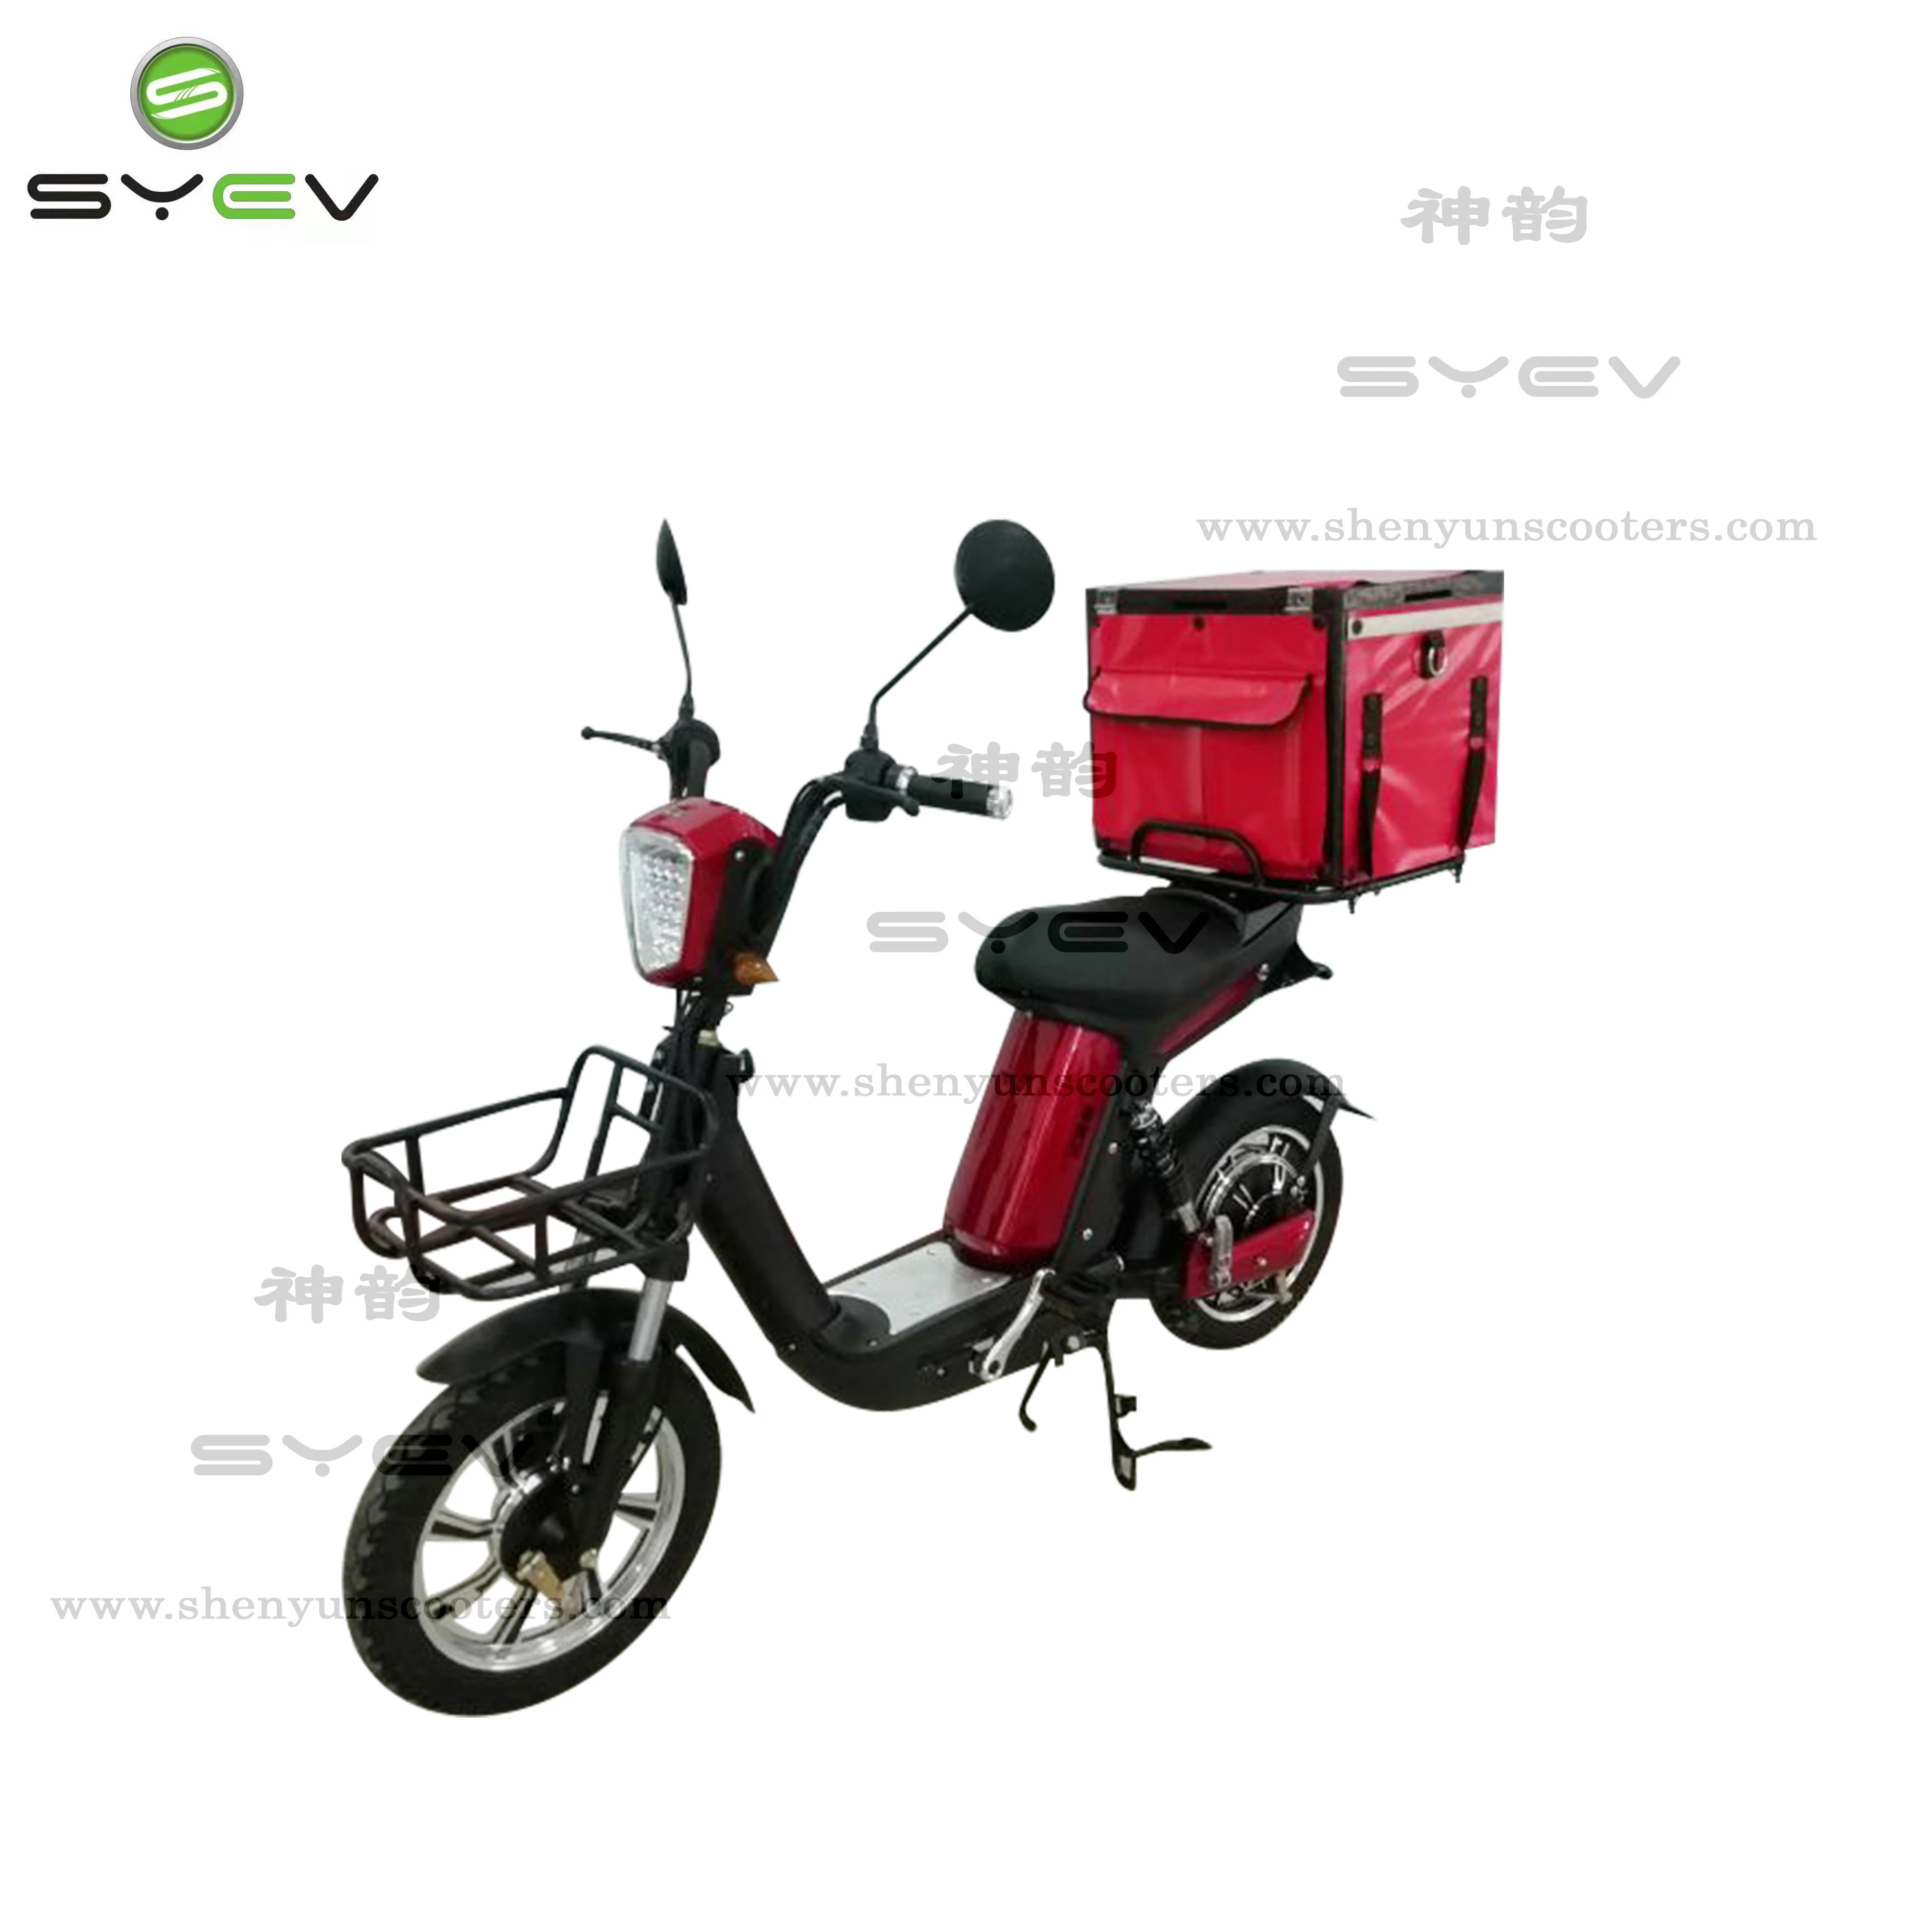 Syev 350W/500W eléctrico de batería portátil ciclomotor Scooter eléctrico con la entrega de verificación